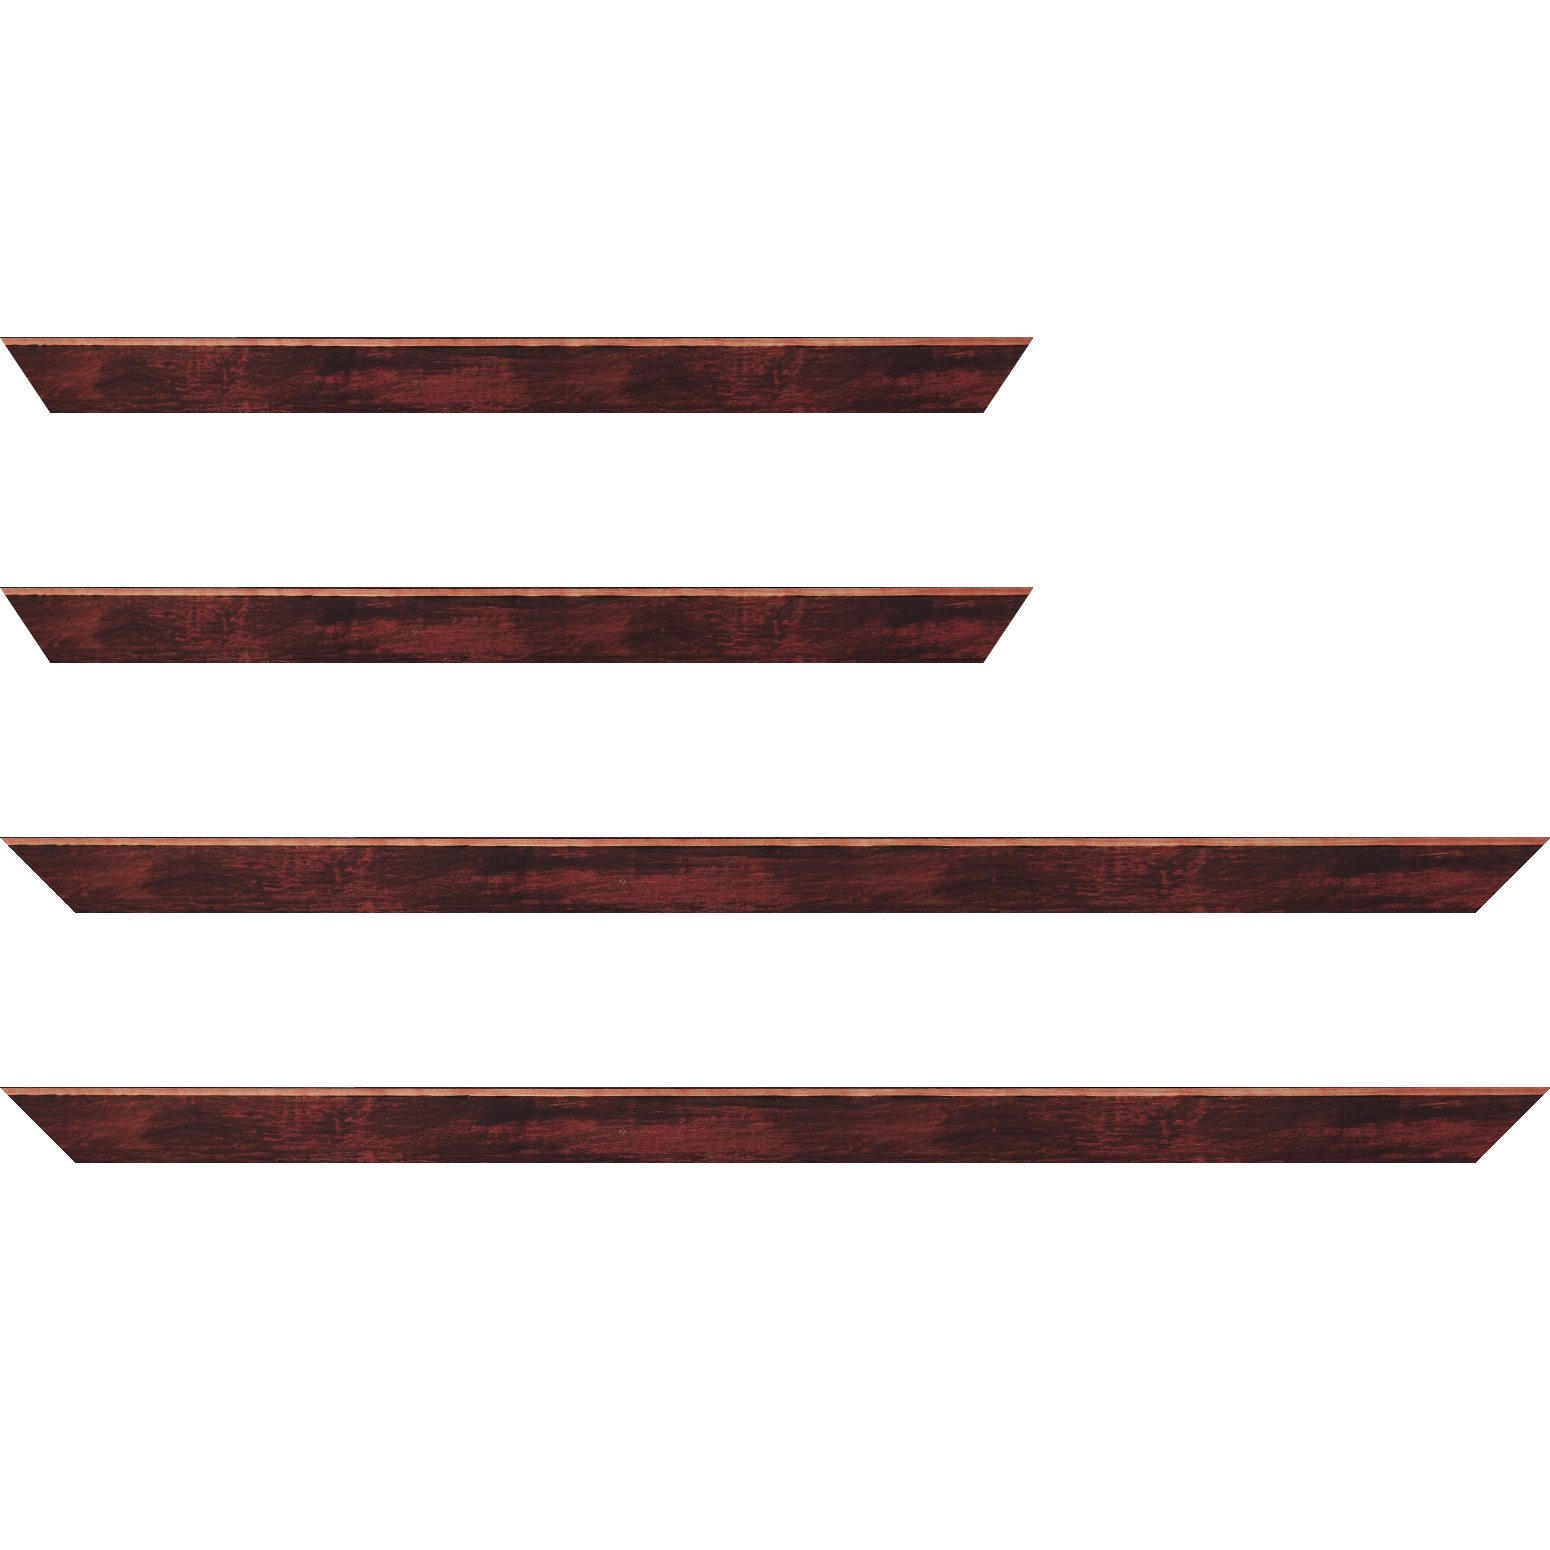 Baguette bois profil arrondi en pente plongeant largeur 2.4cm couleur bordeaux effet ressuyé, angle du cadre extérieur filet naturel